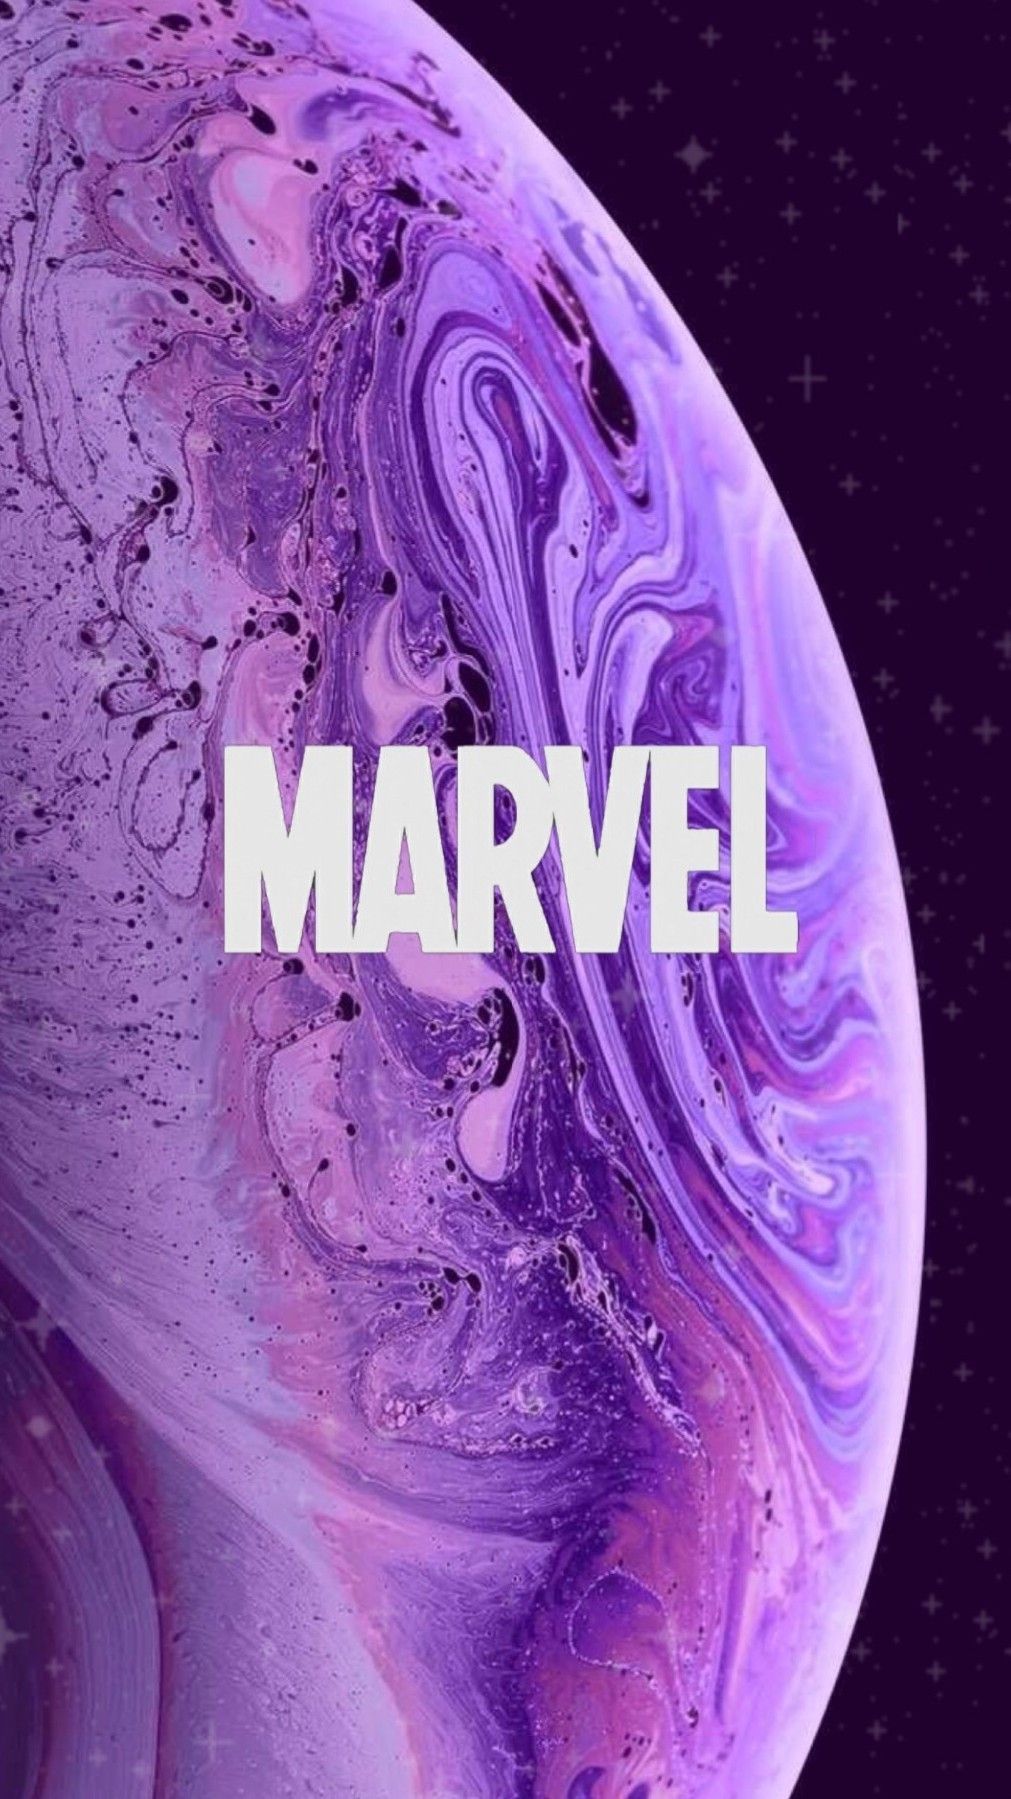 marvel aesthetic wallpaper. Avengers wallpaper, Marvel wallpaper, Marvel phone wallpaper